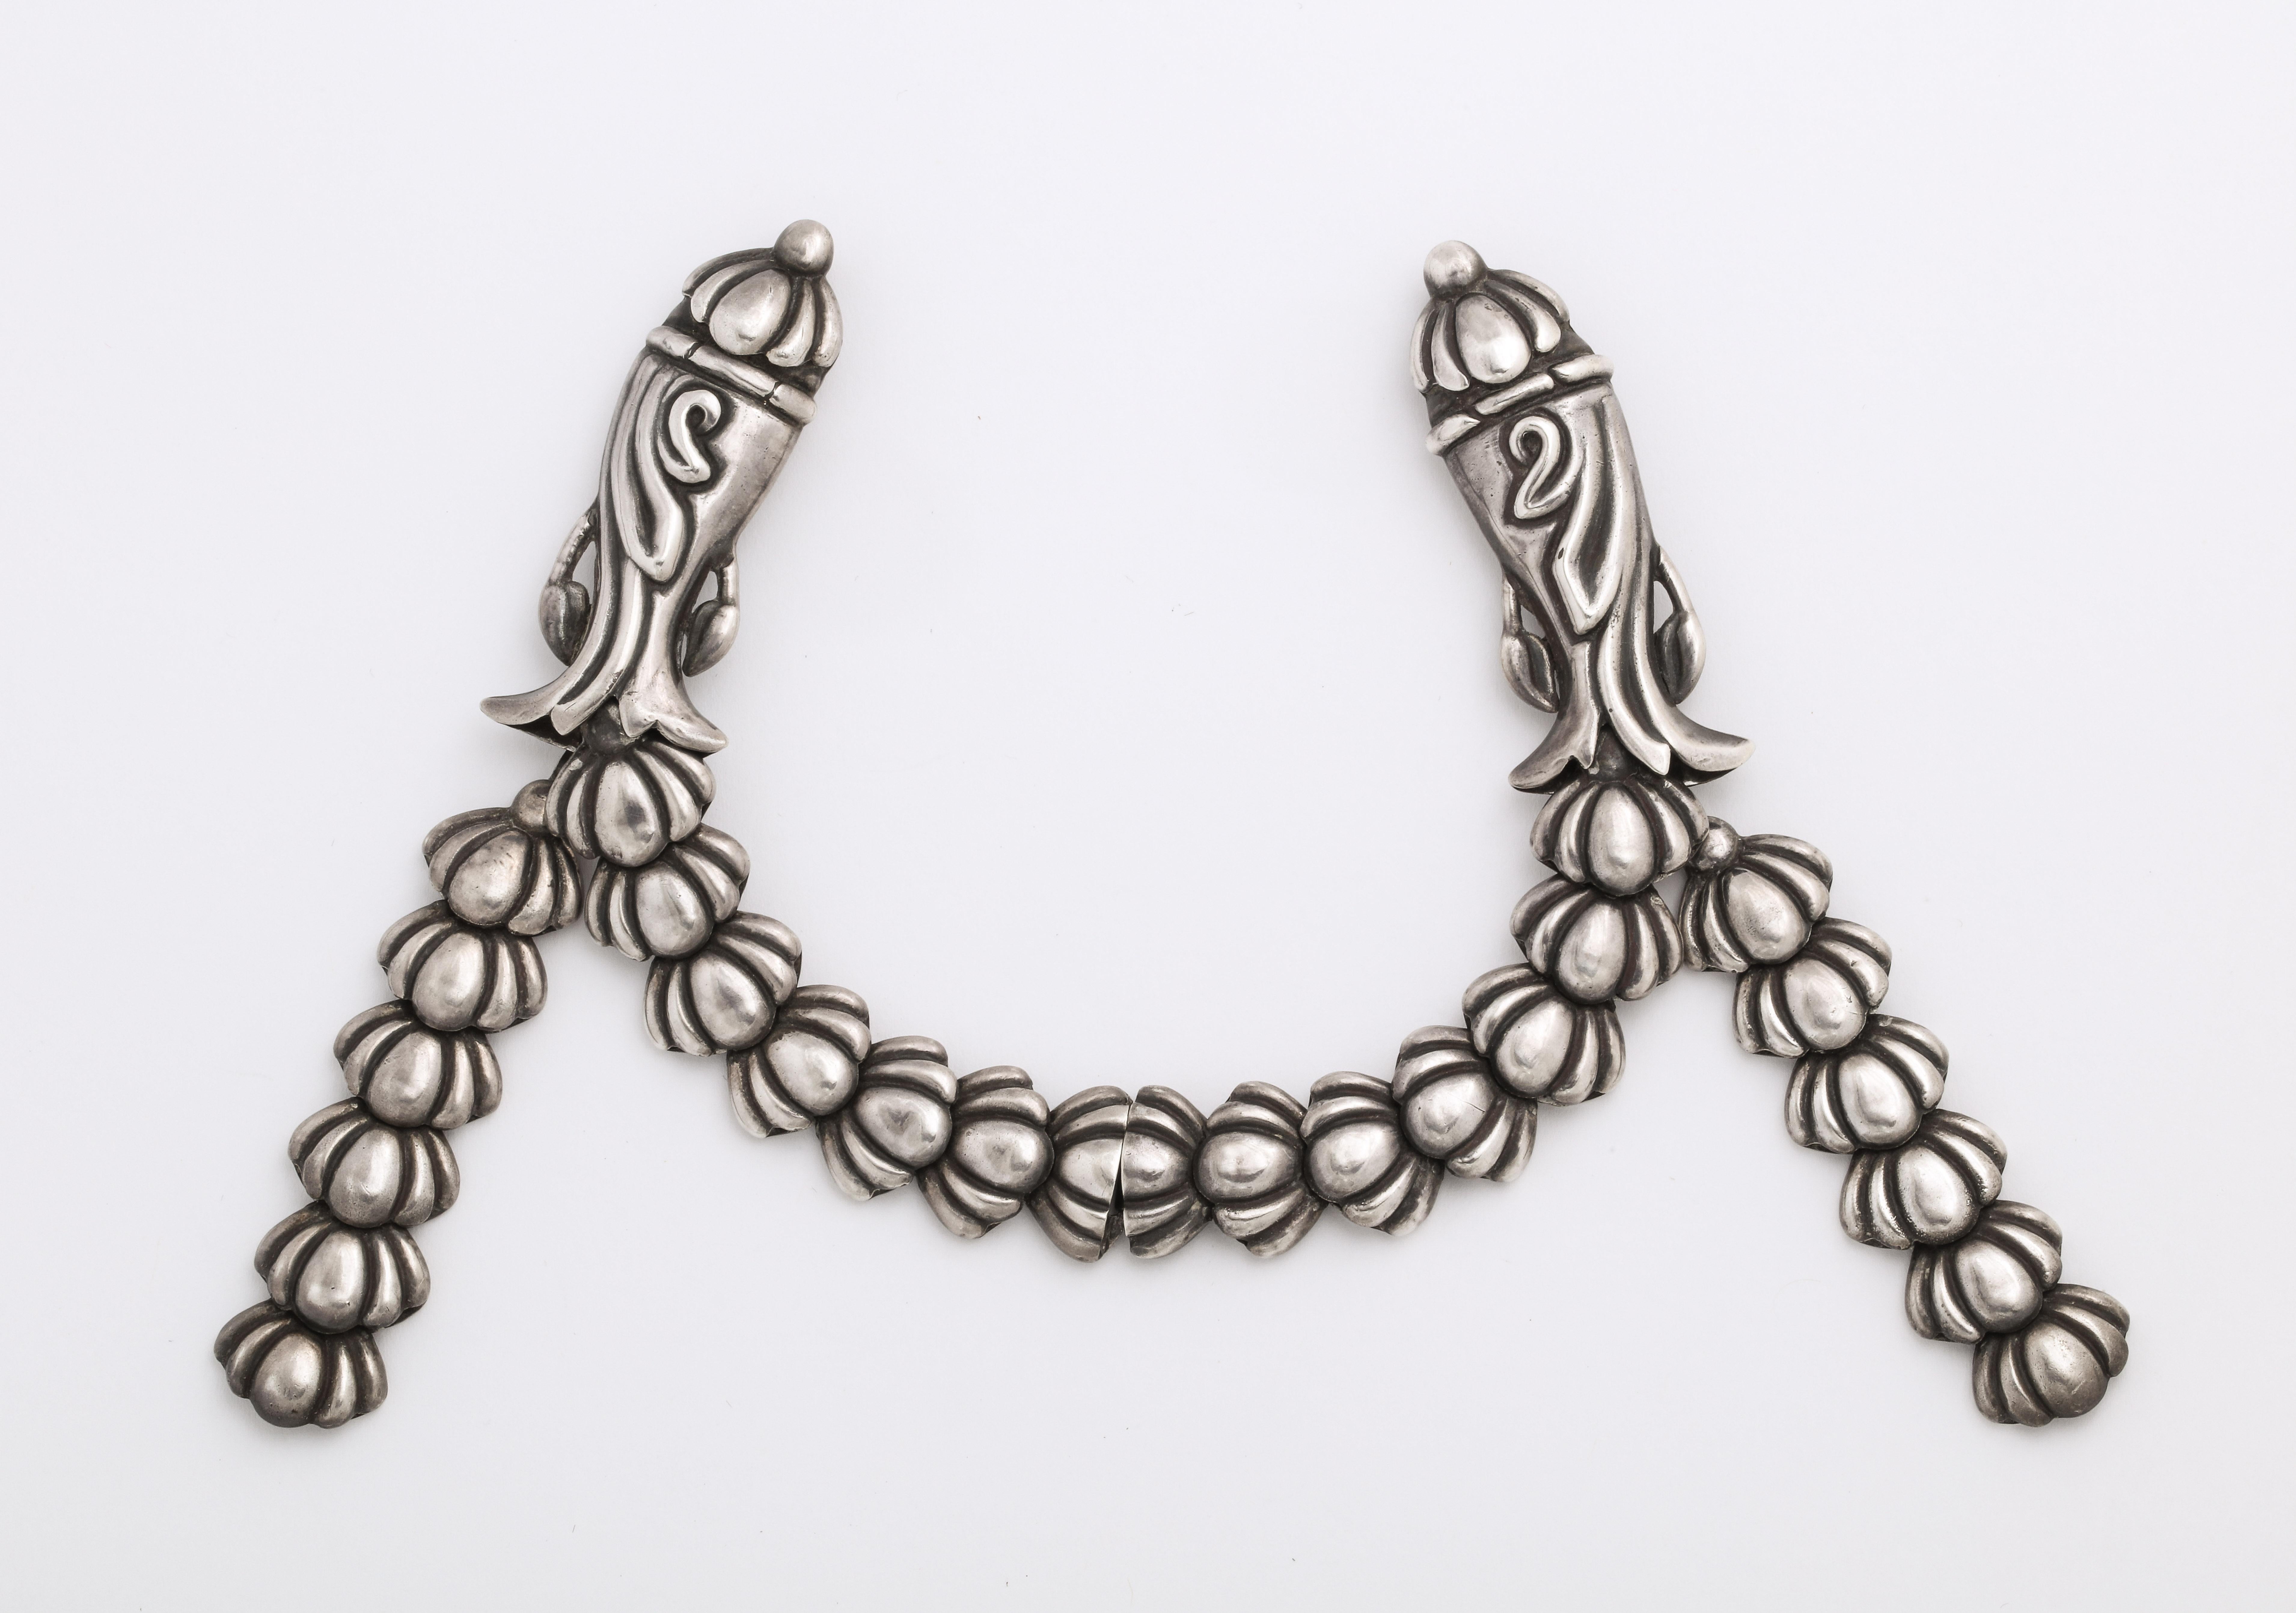 Eine ungewöhnliche Kreation von Los Castillo aus den 1940er Jahren ist der Mantelhalter oder ein Paar Broschen, die von der Hand des bekannten mexikanischen Juweliers stammen. Es ist eines seiner seltenen Stücke und ungewöhnlich, die beiden Teile zu